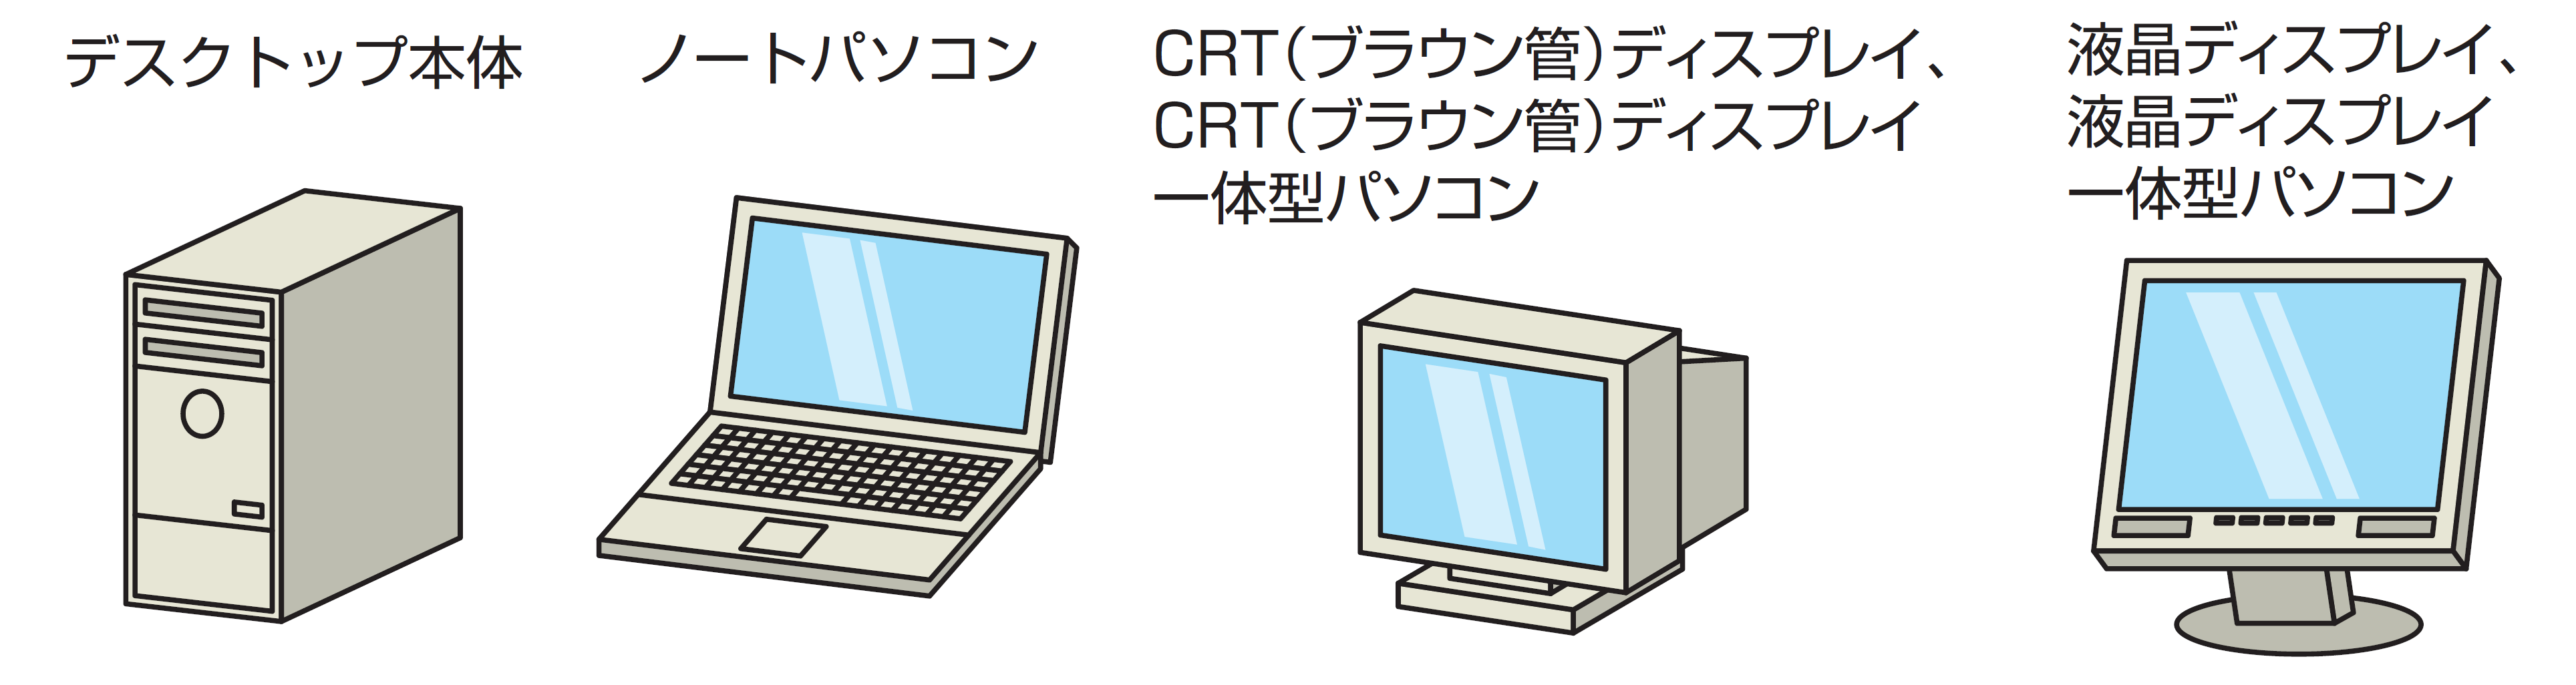 デスクトップ本体、ノートパソコン、CRT（ブラウン管）ディスプレイ、CRT（ブラウン管）ディスプレイ一体型パソコン、液晶ディスプレイ、液晶ディスプレイ一体型パソコン